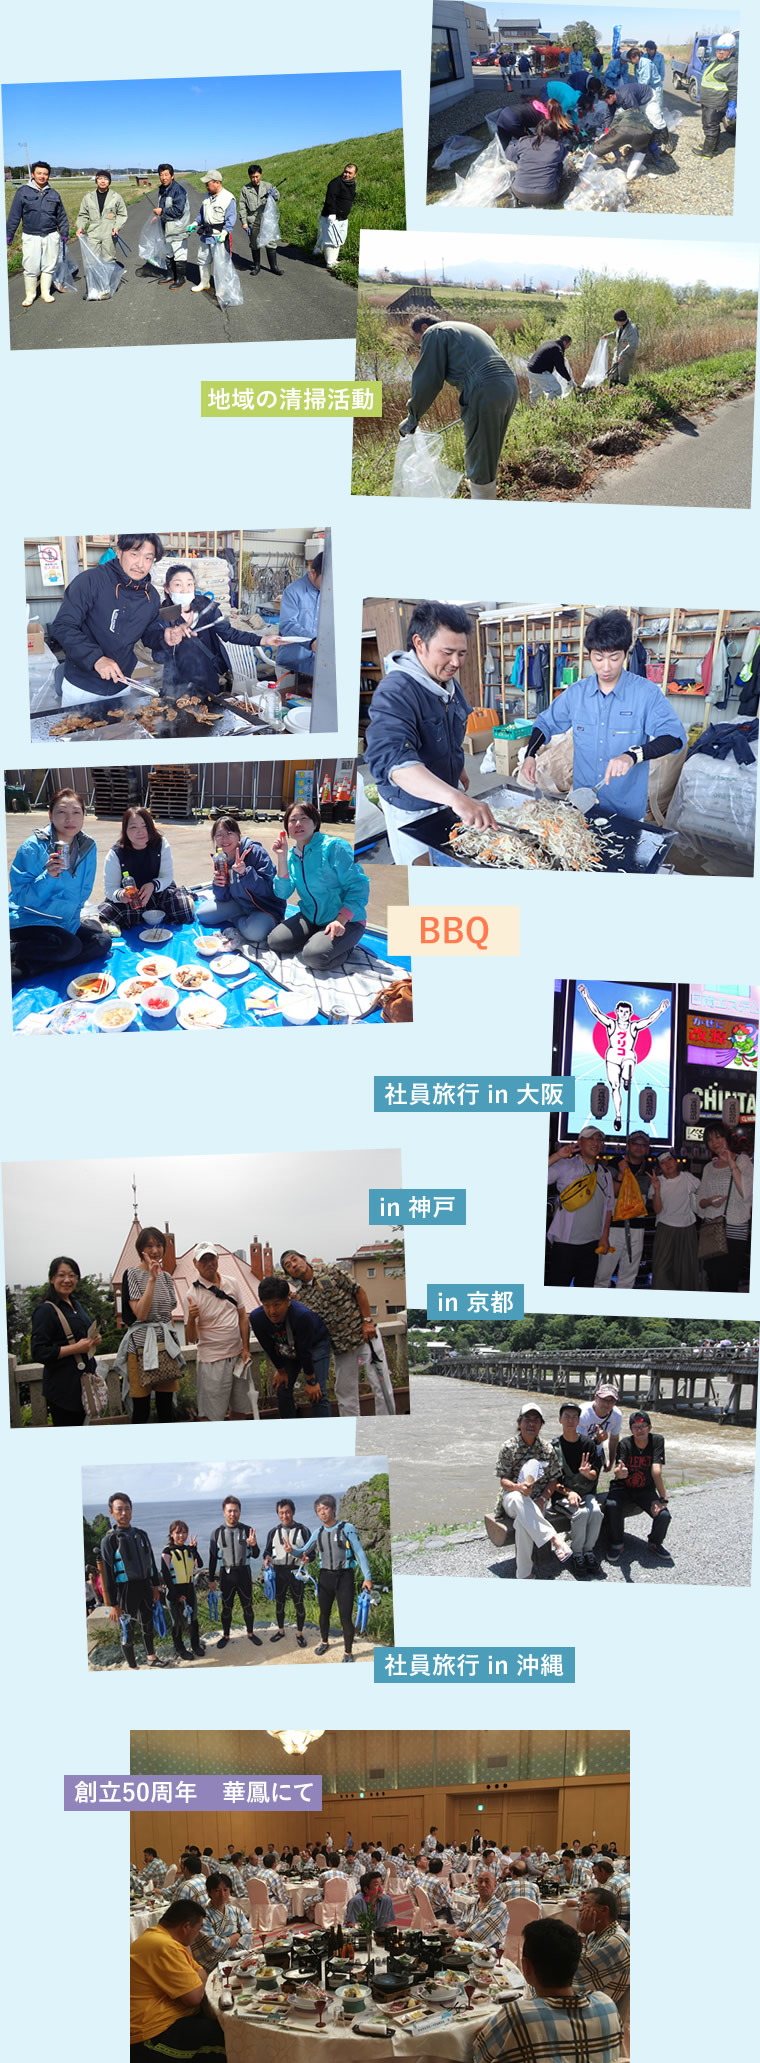 BBQや旅行など、社内イベントのイメージ